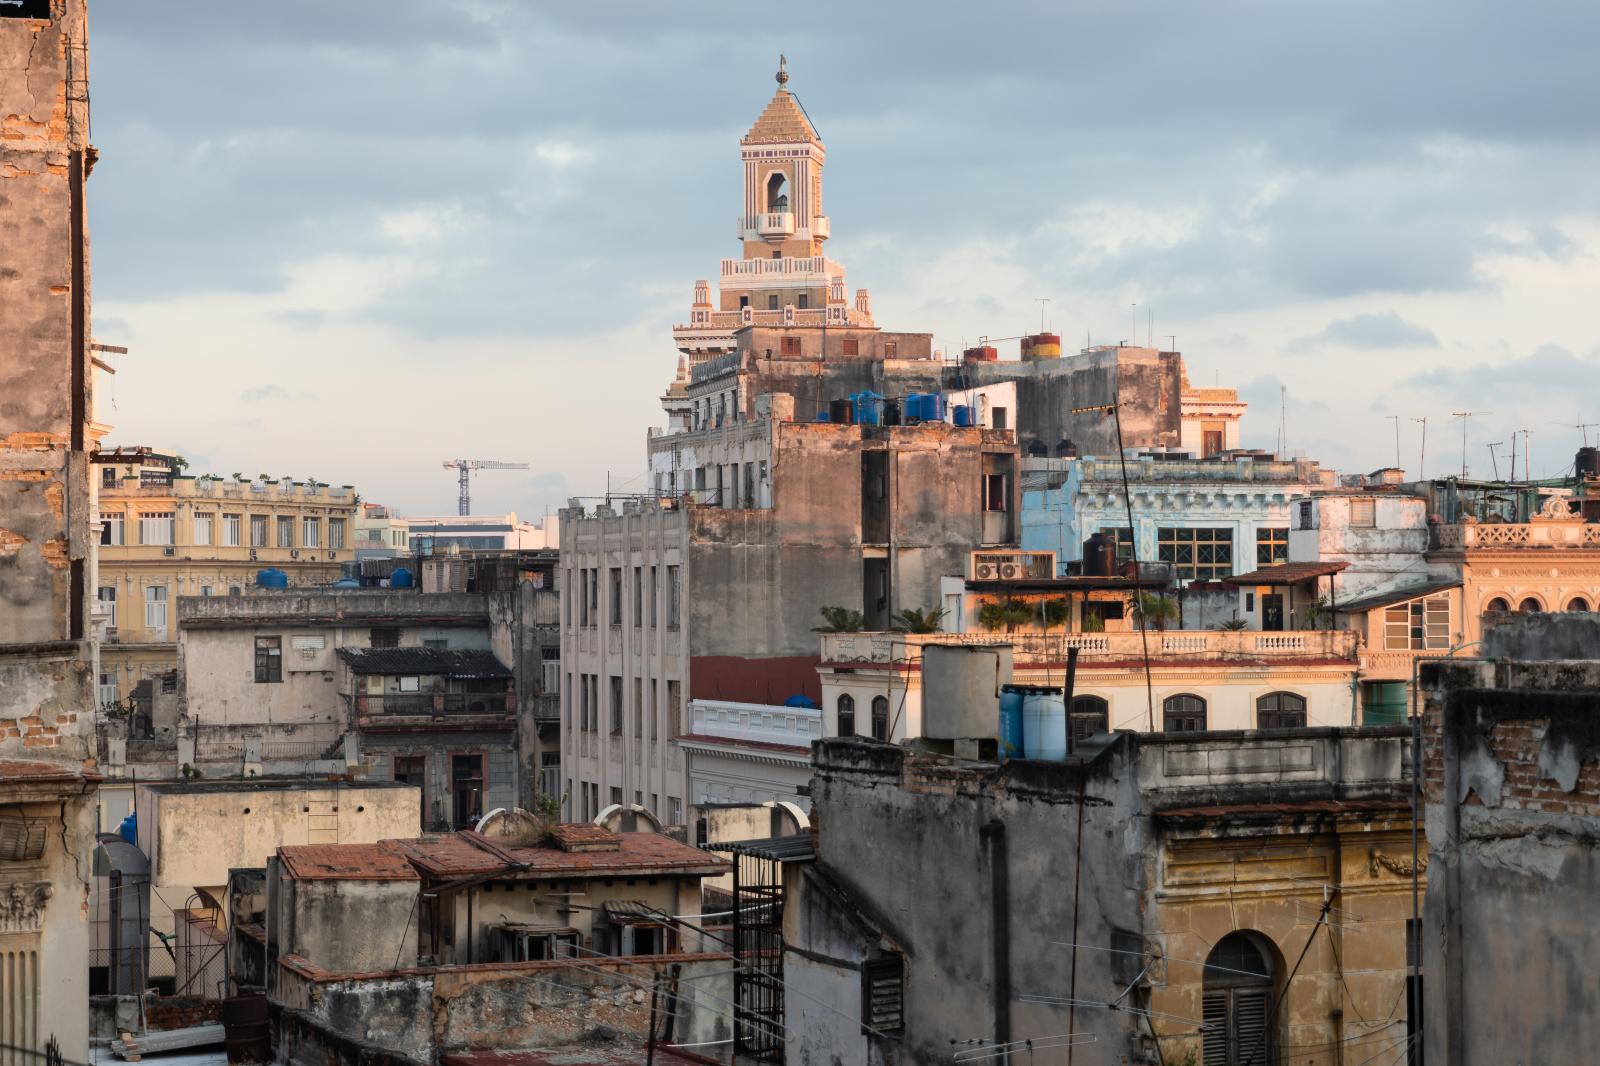 Bacardi Building, Old Havana skyline